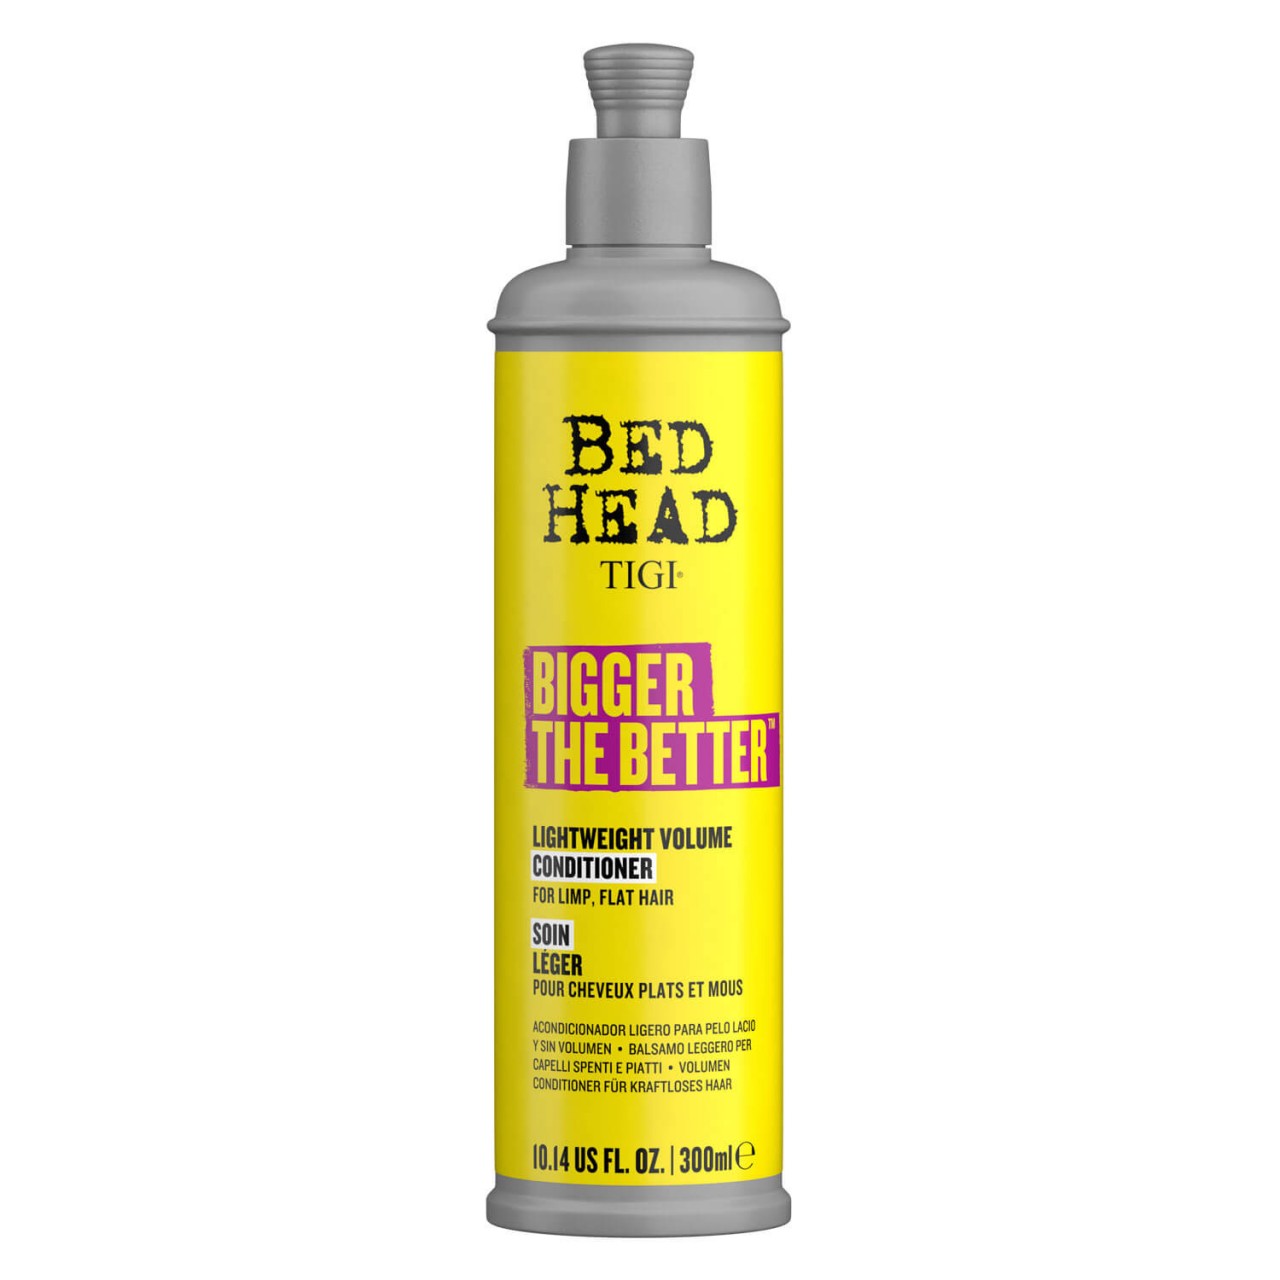 Bed Head - Bigger The Better Lightweight Volume Conditioner von TIGI